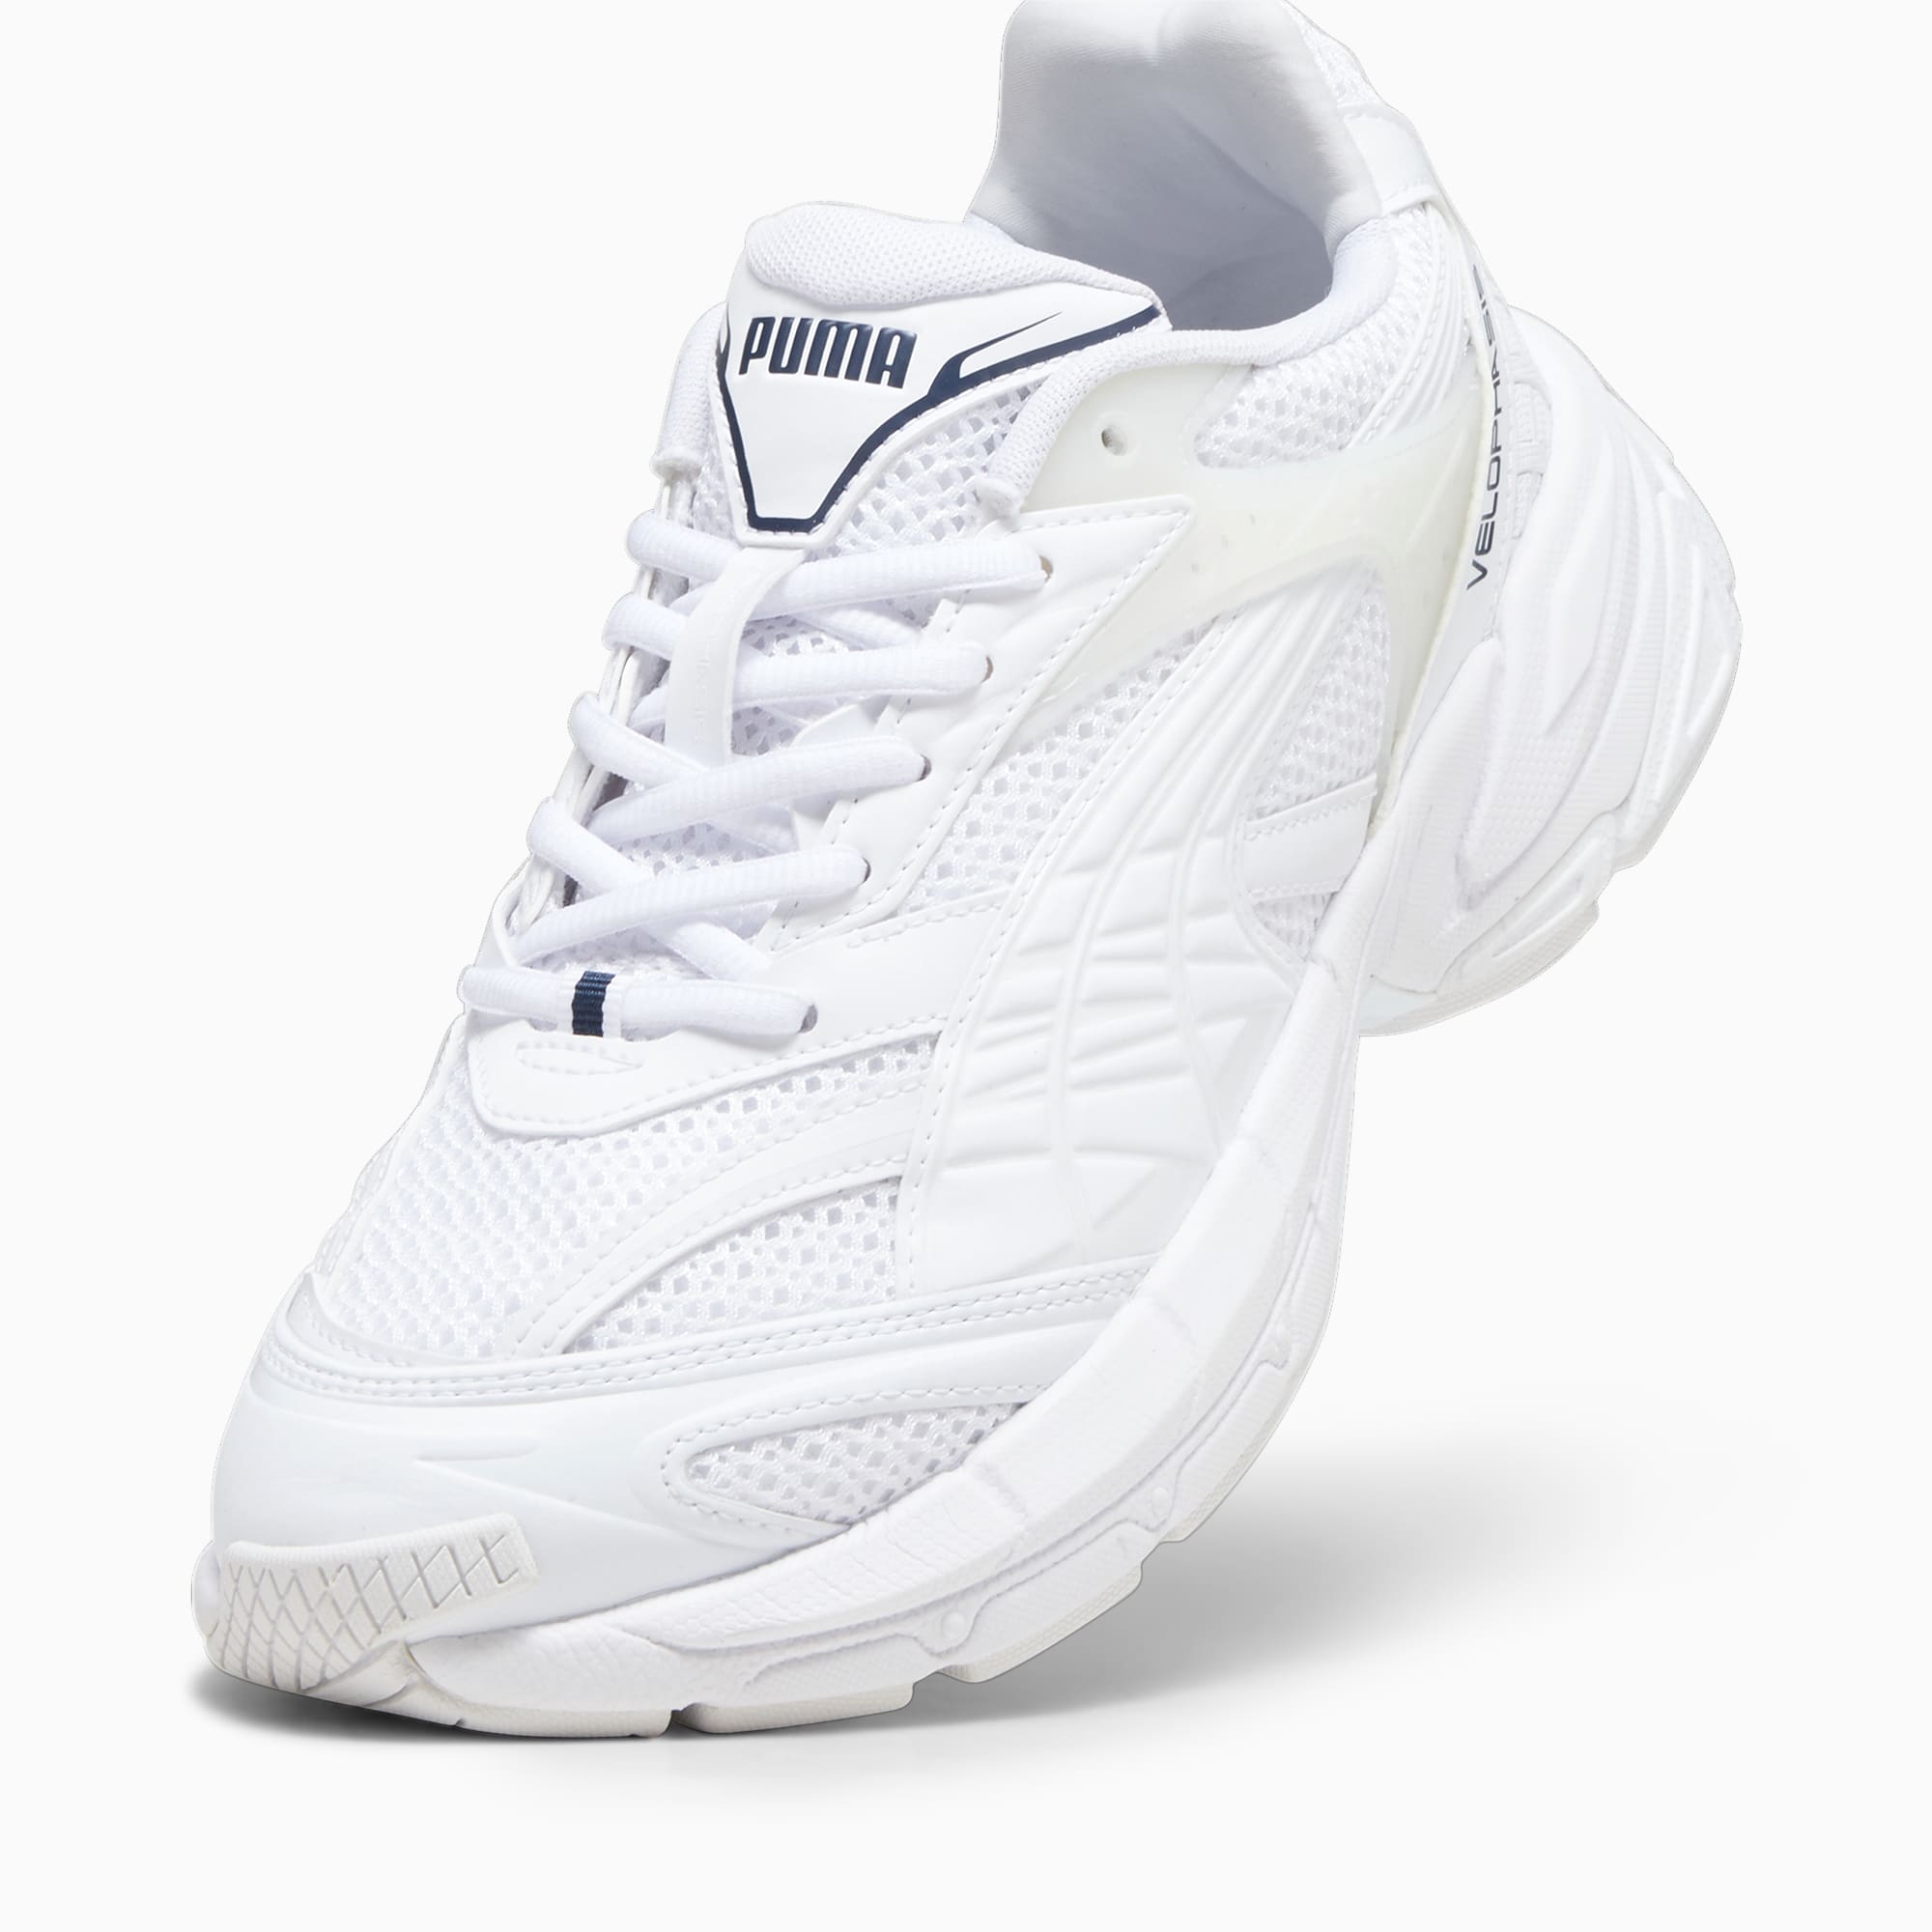 PUMA Velophasis Technisch Sneakers Schuhe, Weiß/Blau, Größe: 36, Schuhe